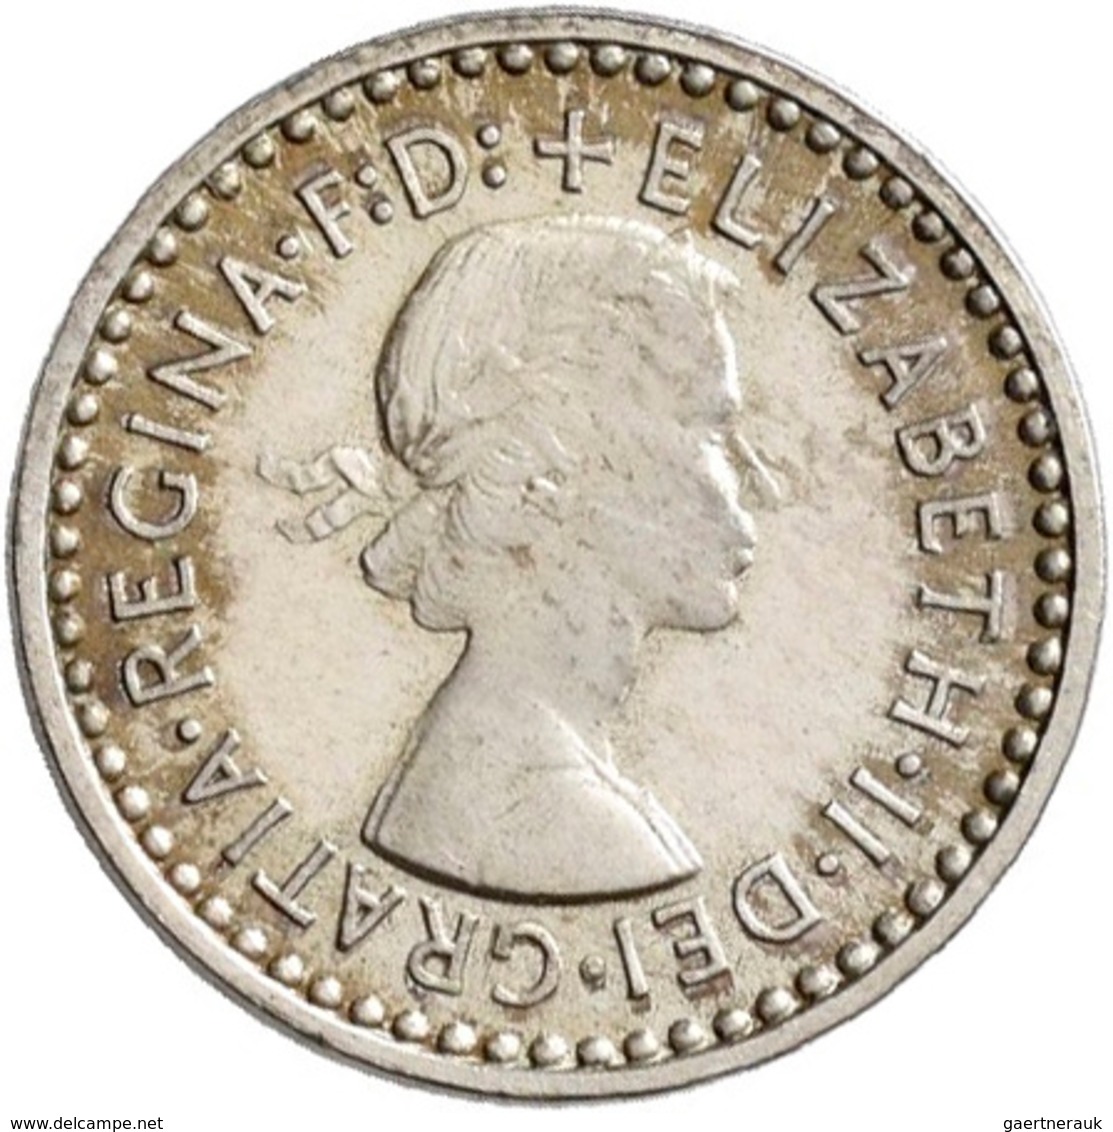 Großbritannien: Elizabeth II. 1952-,: Maundy Set 1,2,3,4 Pence 1963, vorzüglich, vorzüglich-Stempelg